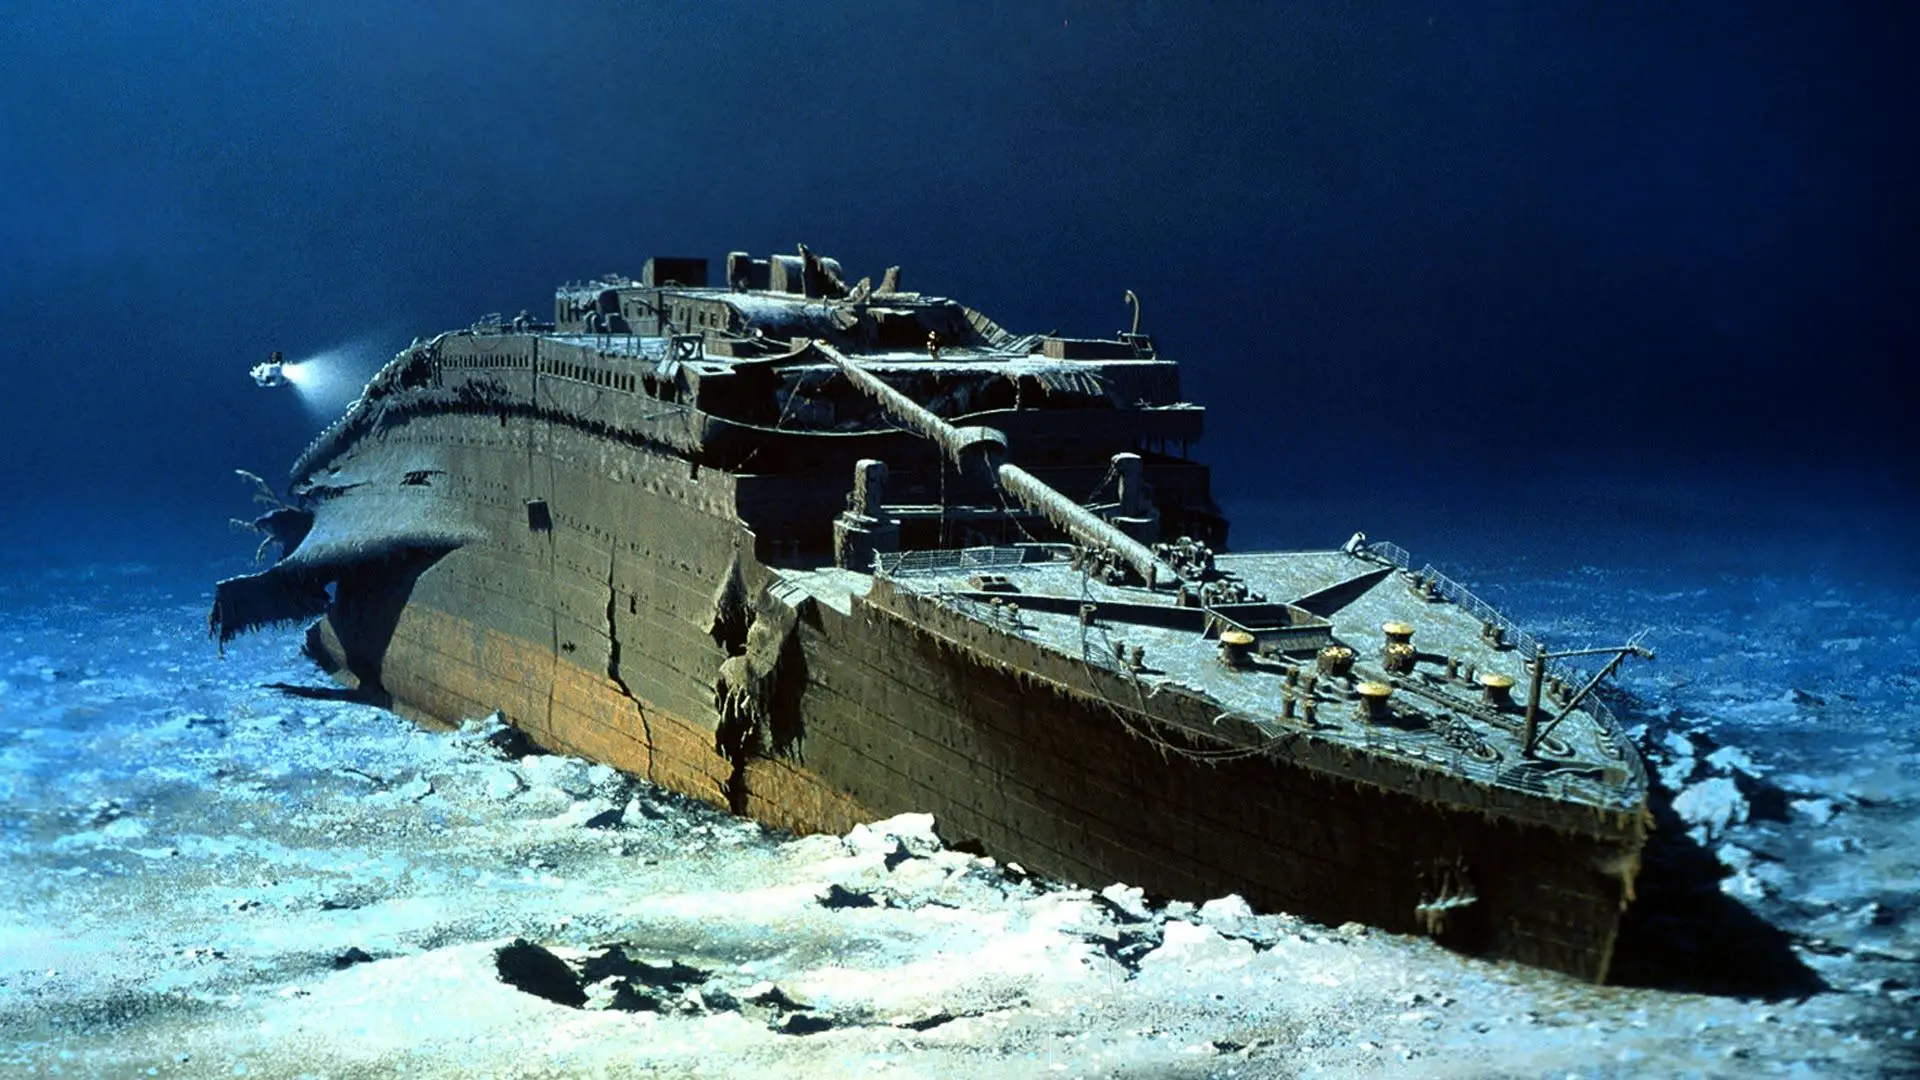 علت مچاله شدن زیردریایی تایتان منتشر شد